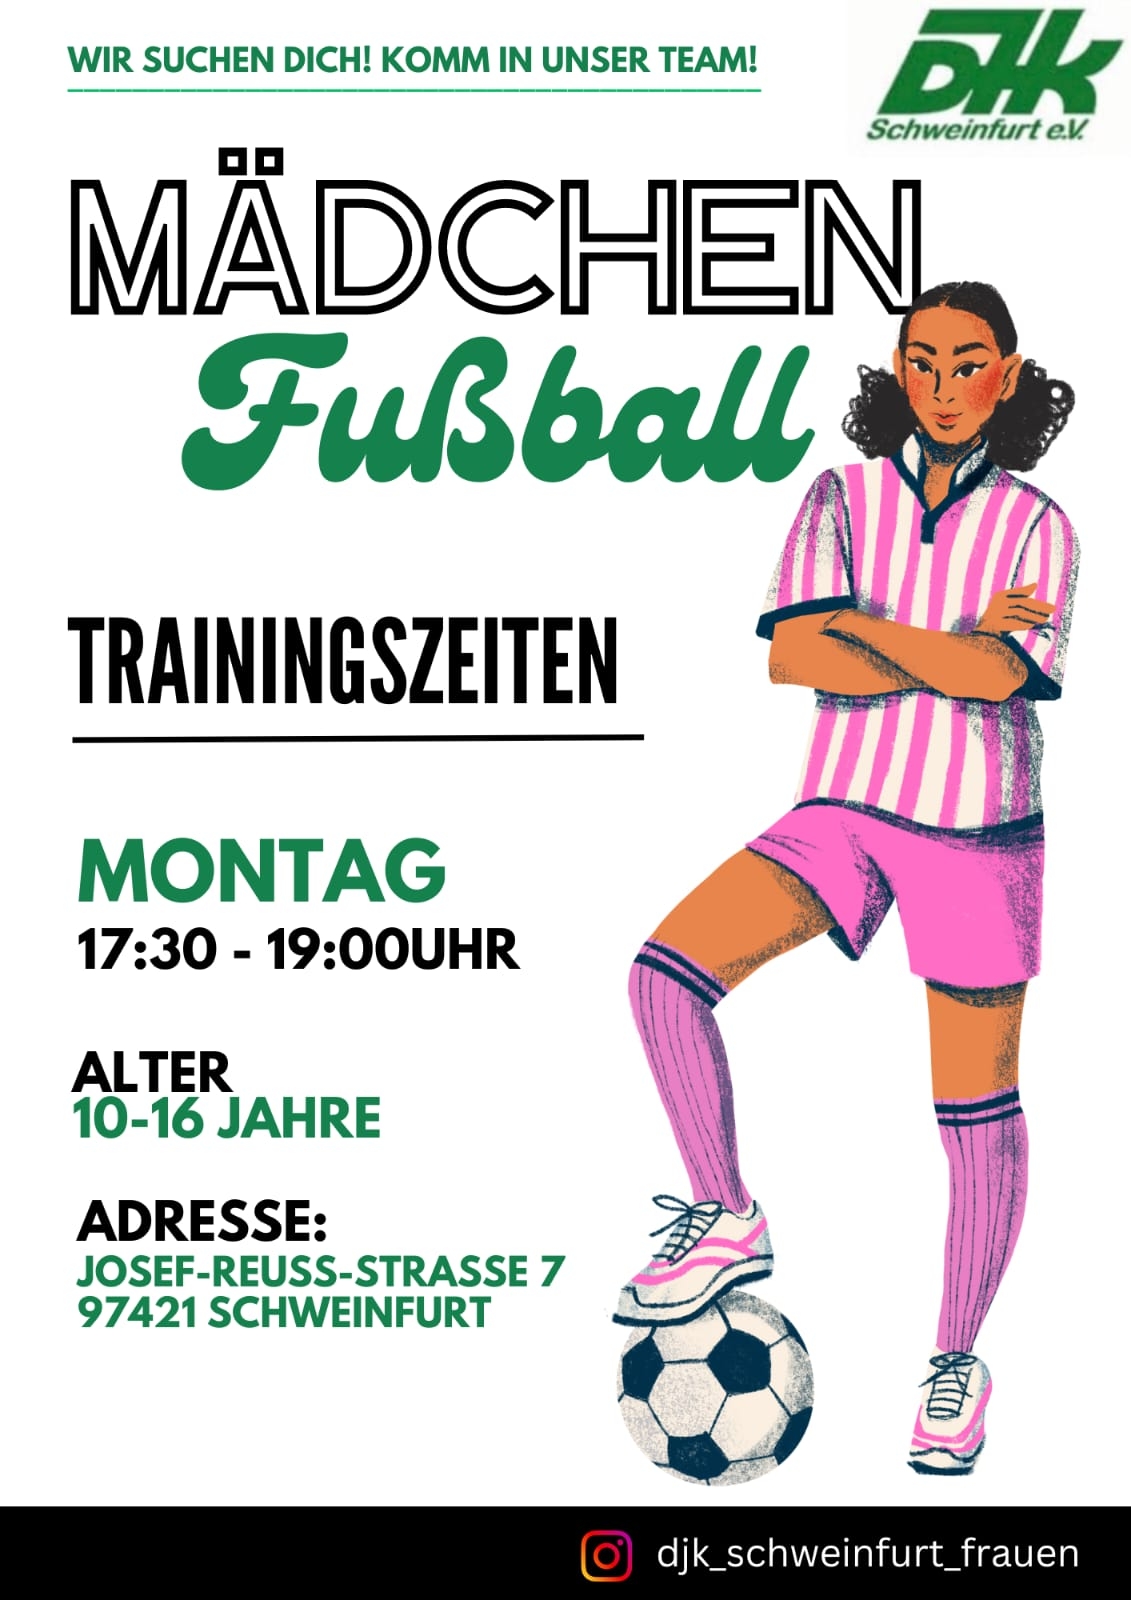 MaedchenFussball